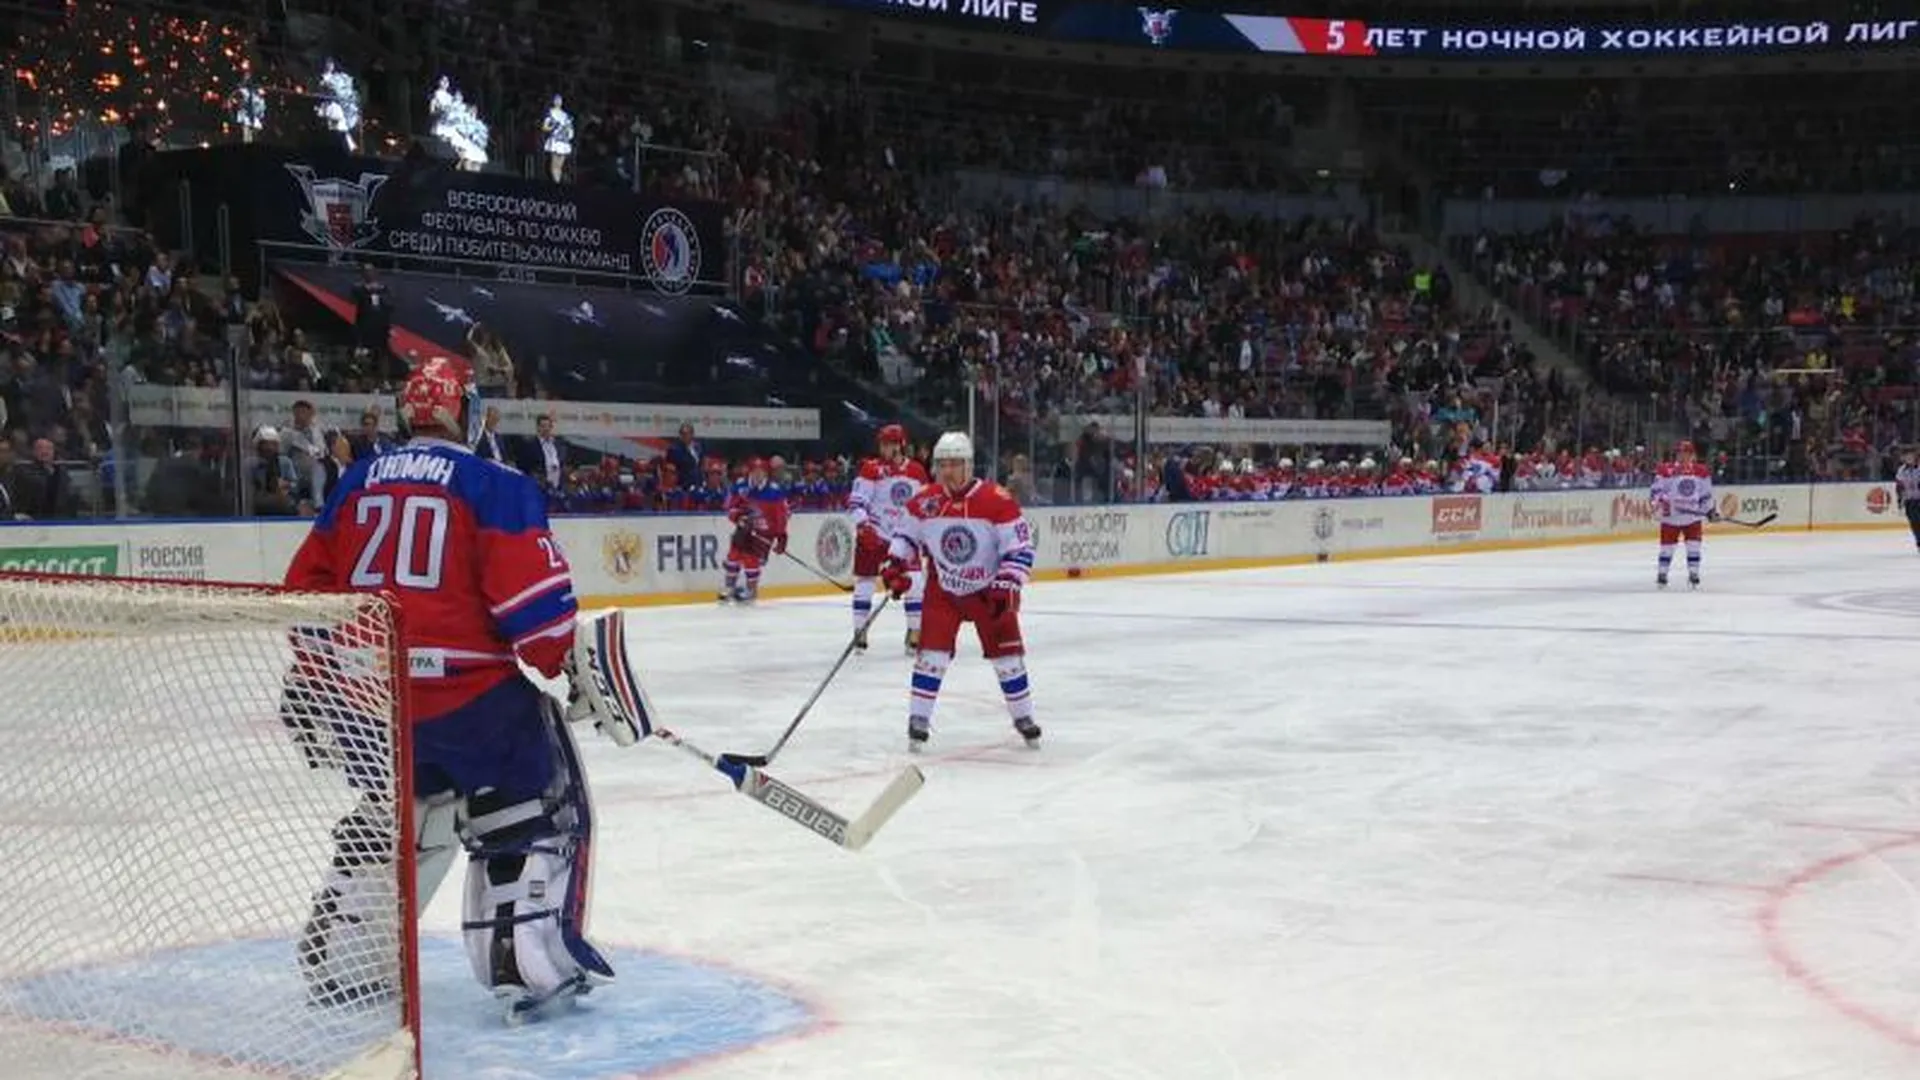 Воробьев с Путиным приняли участие в гала-матче Ночной Хоккейной лиги